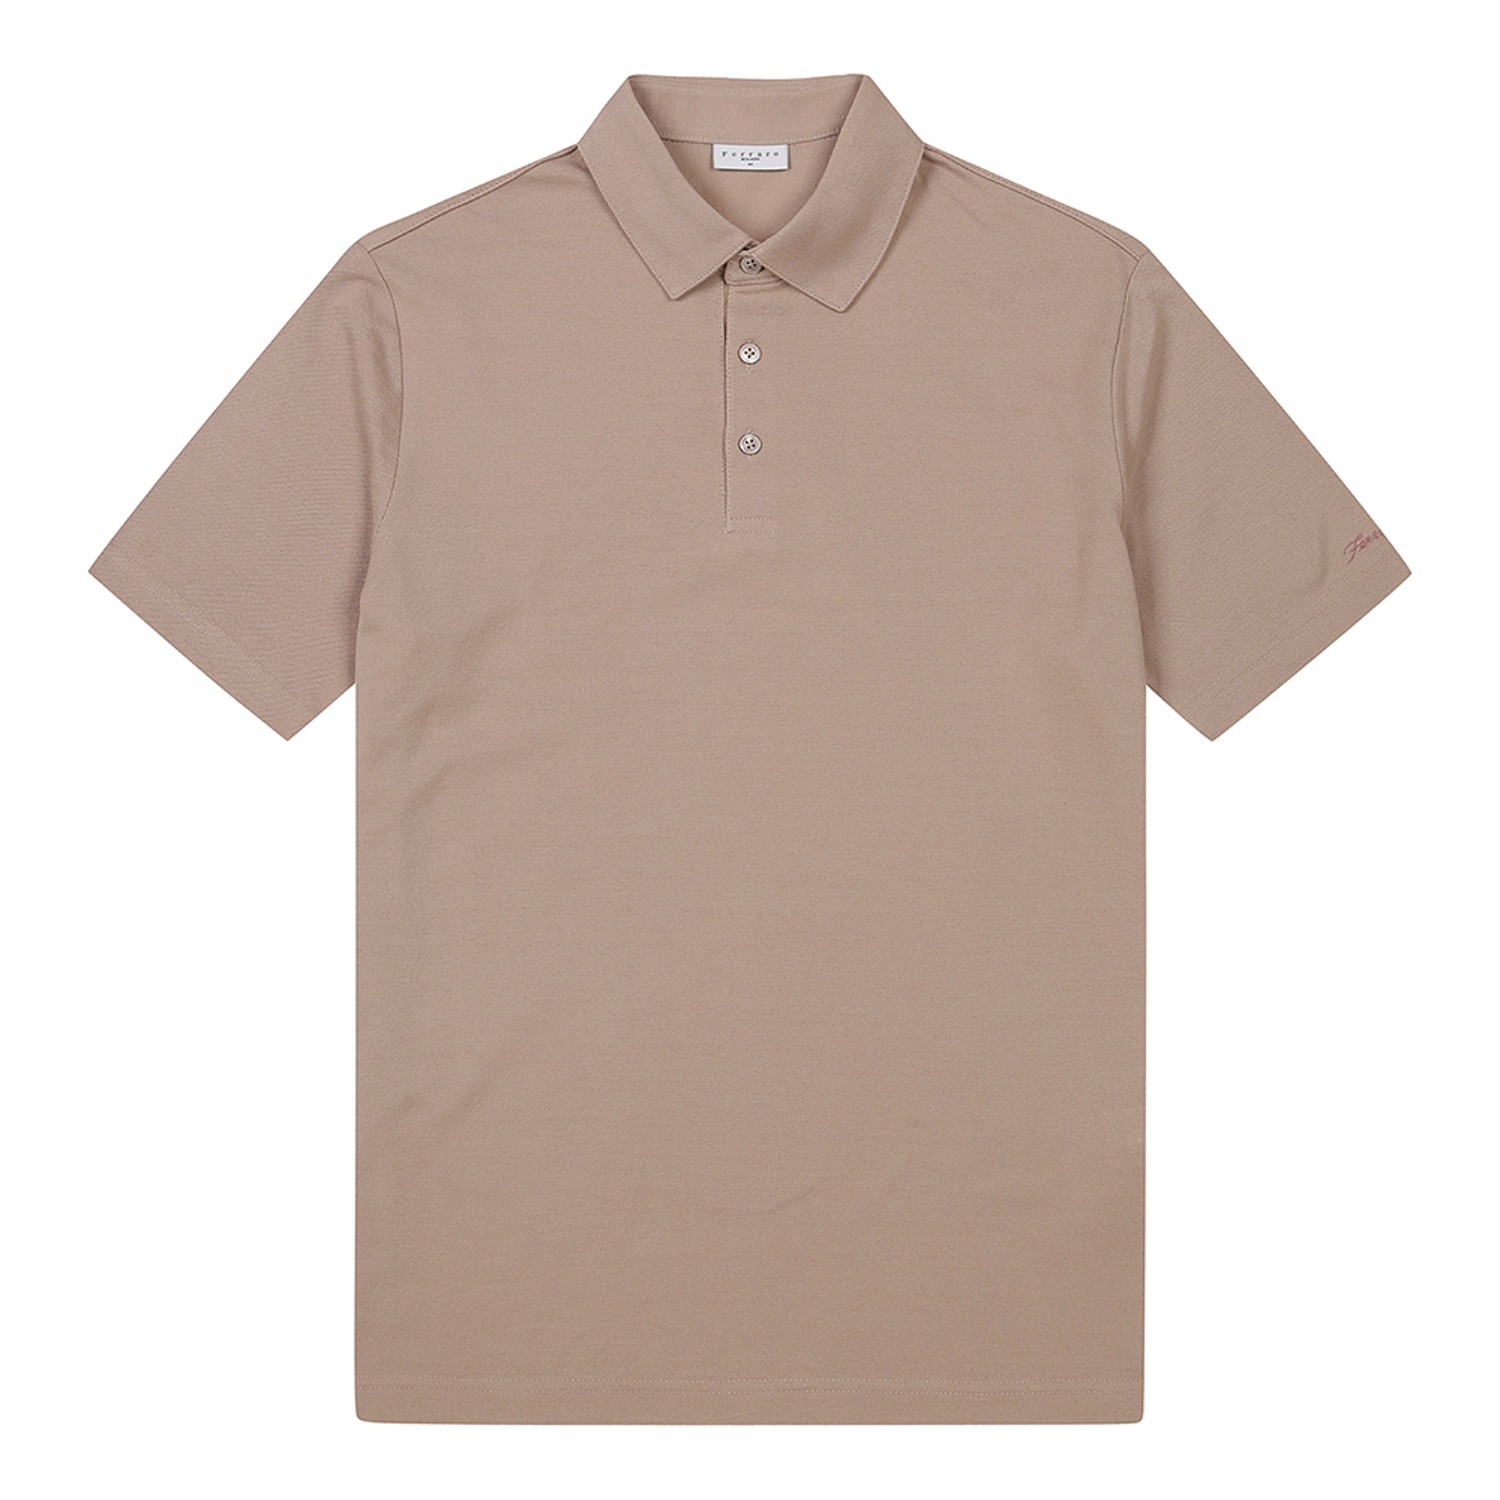 남성 베이직 피케 조직 카라 반팔 티셔츠 라이트핑크 (AEC120171)